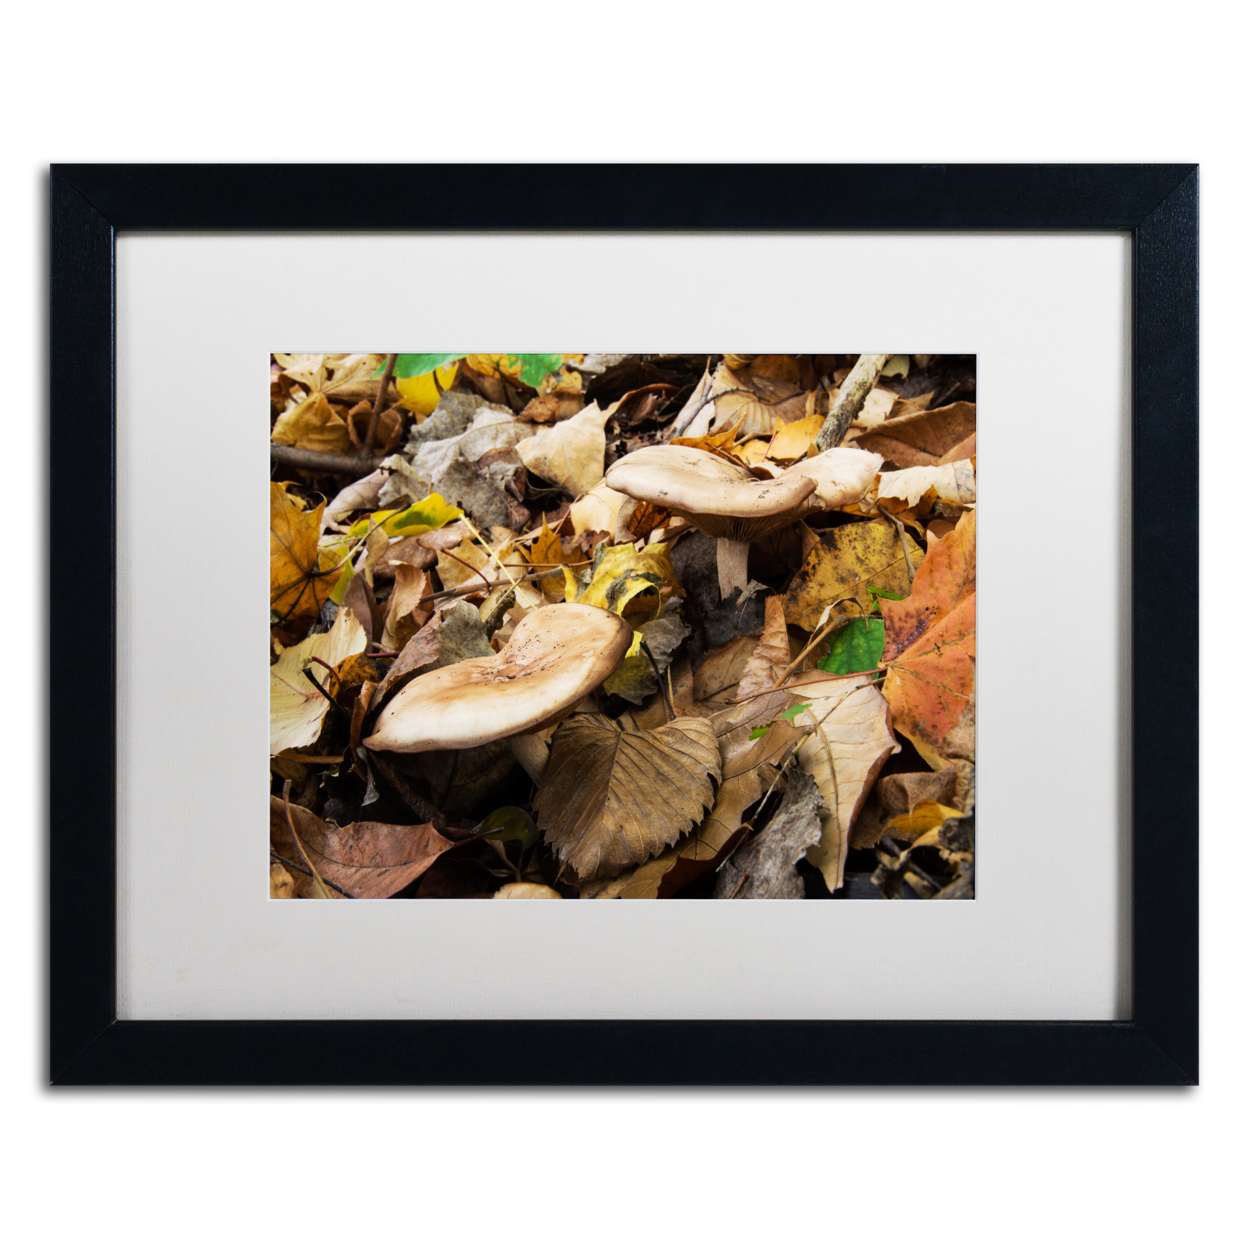 Kurt Shaffer 'Mushrooms In The Leaves' Black Wooden Framed Art 18 X 22 Inches